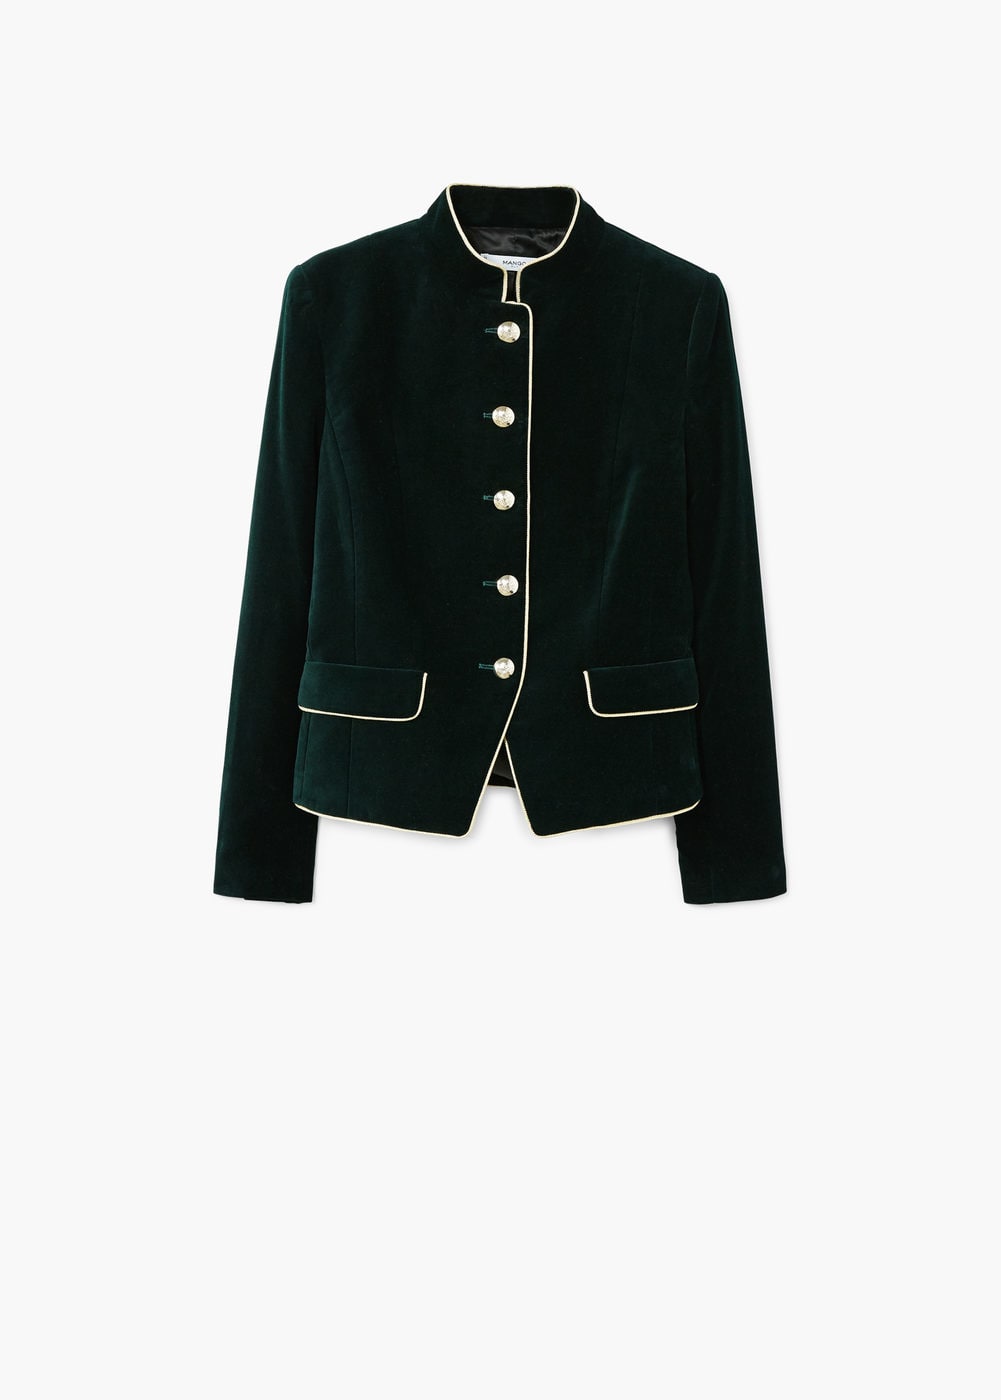 Military-style jacket £79.99 